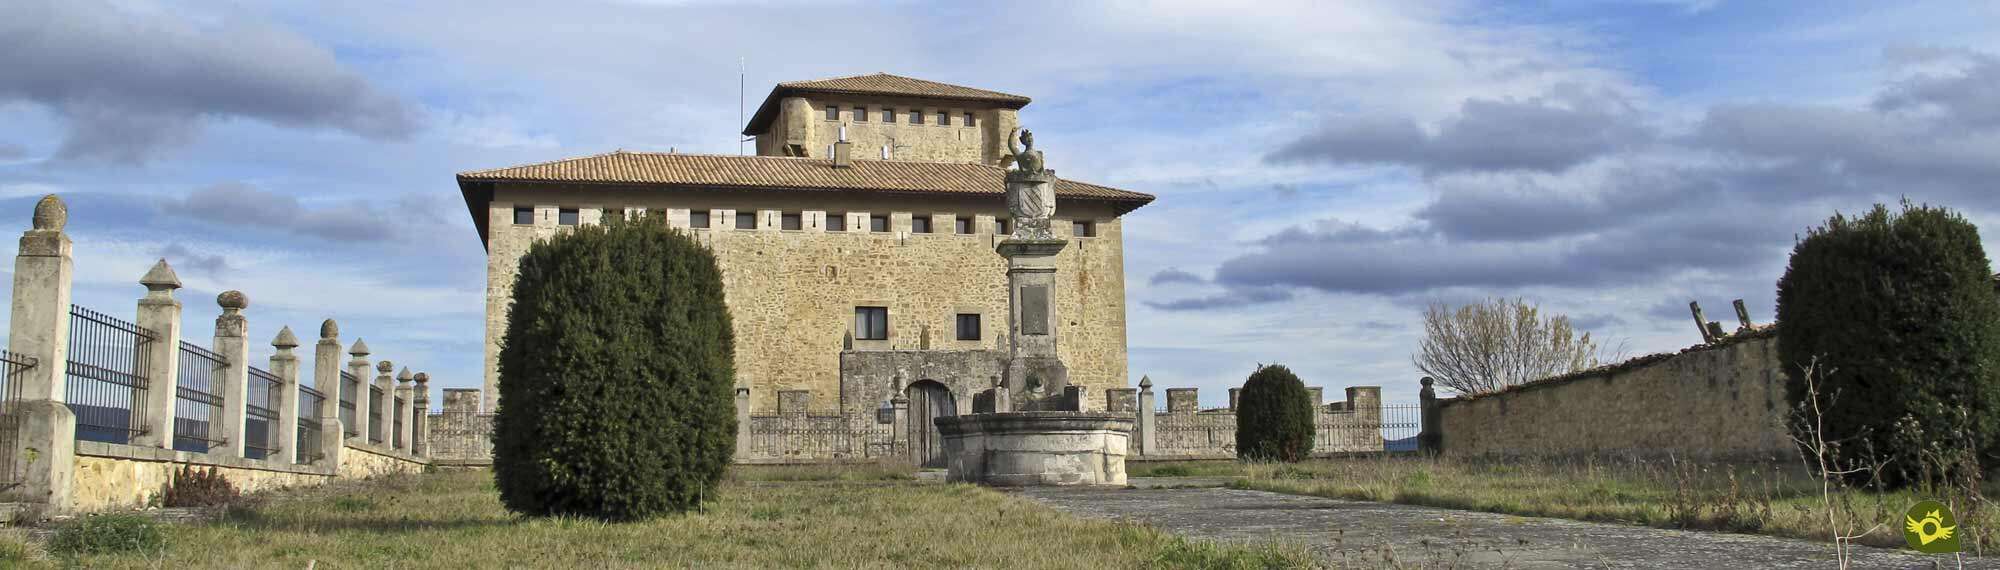 Tower-Palace of the Varona family